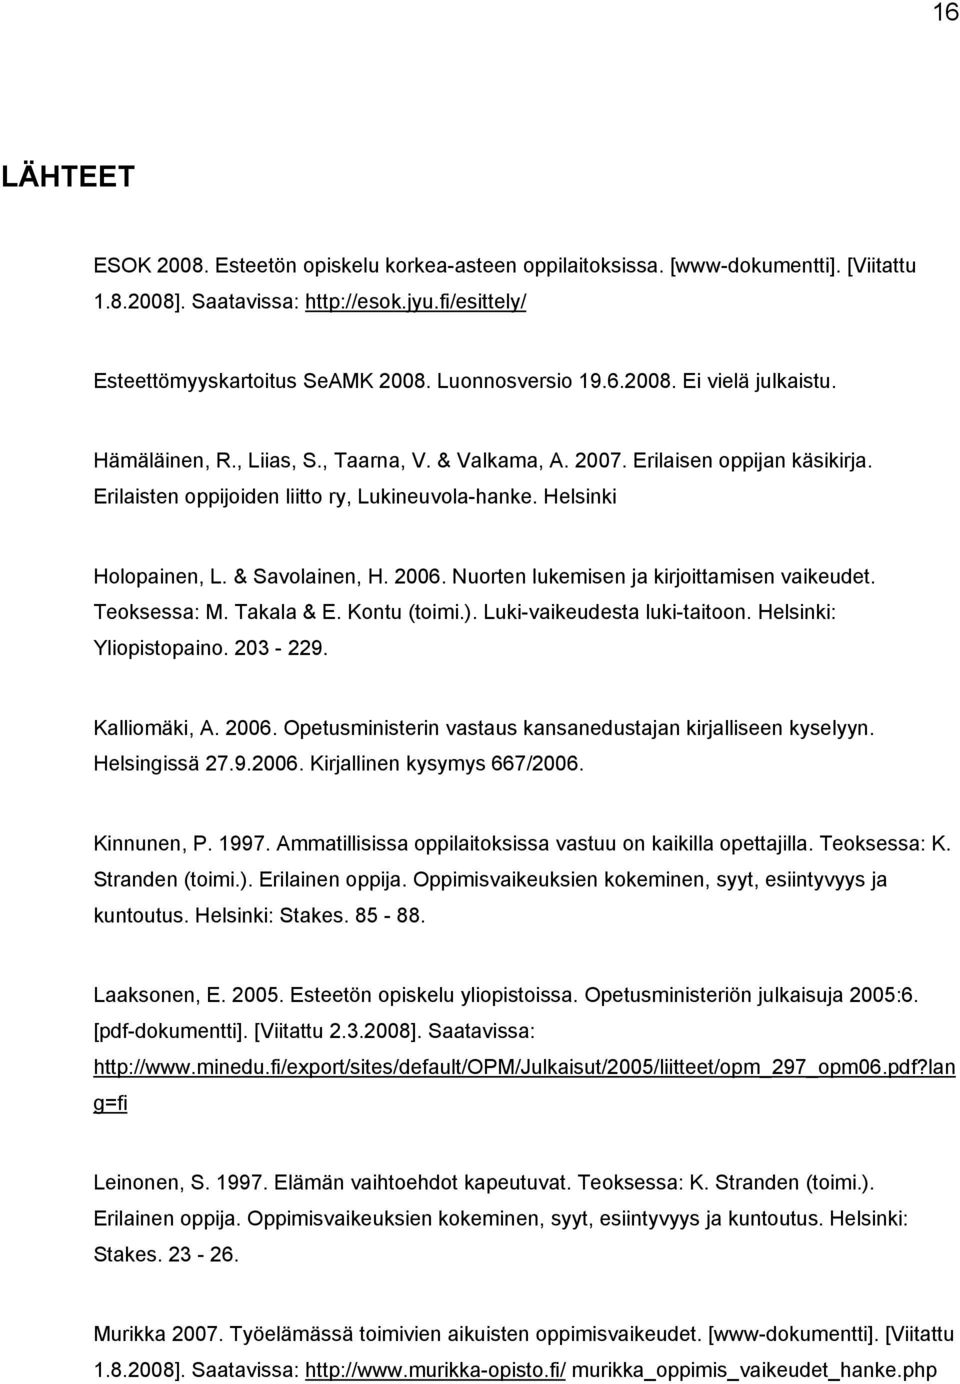 Helsinki Holopainen, L. & Savolainen, H. 2006. Nuorten lukemisen ja kirjoittamisen vaikeudet. Teoksessa: M. Takala & E. Kontu (toimi.). Luki-vaikeudesta luki-taitoon. Helsinki: Yliopistopaino.